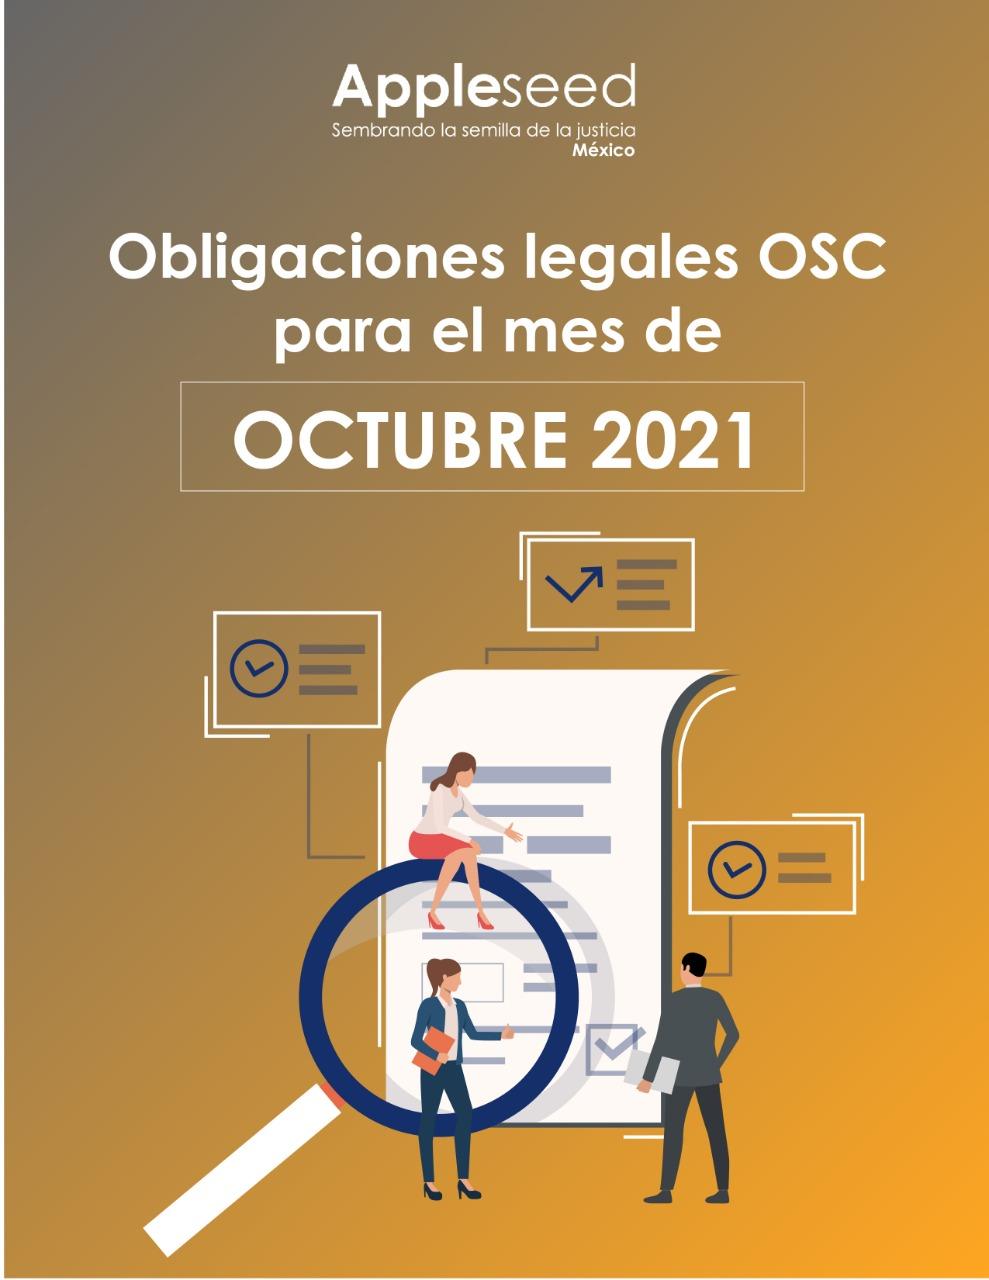 Obligaciones legales OSC para el mes de octubre 2021